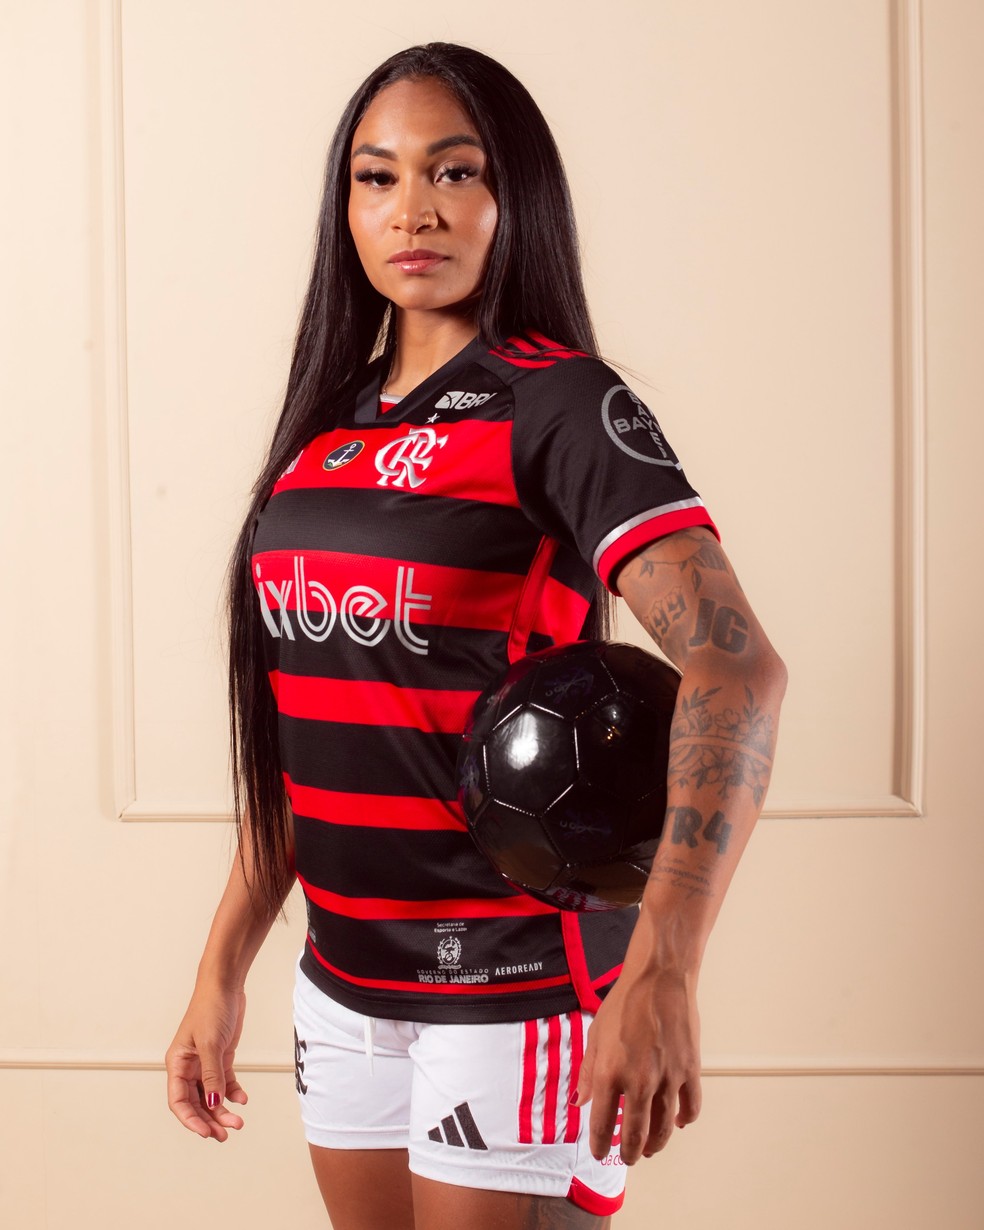 Thais Regina, zagueira do Flamengo — Foto: Paula Reis/Flamengo